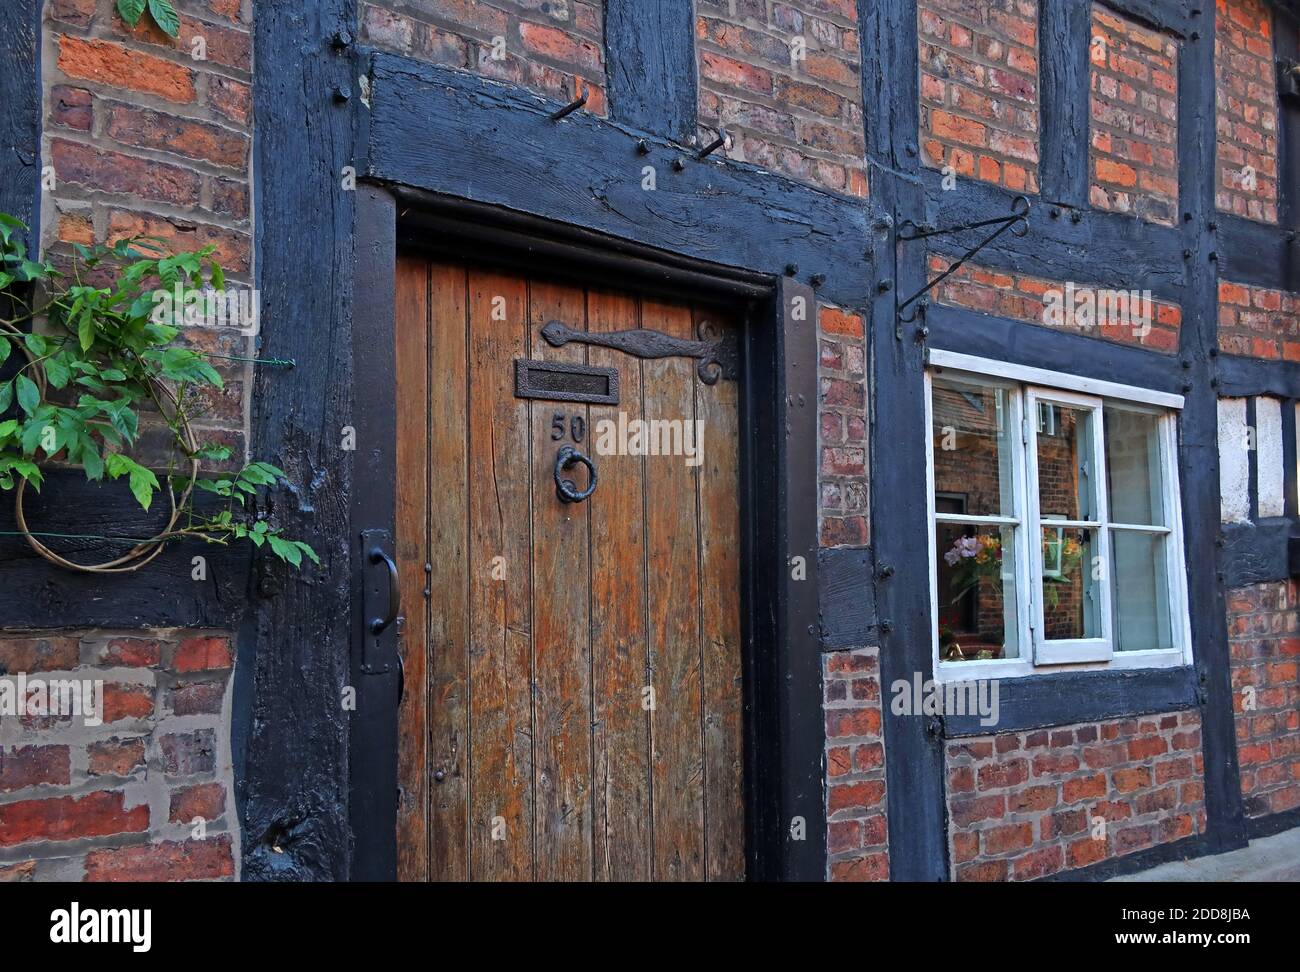 Numéro 50,Church Street,Great Budworth,maison traditionnelle en bois encadré,Gt Budworth,Northwich,Cheshire,Angleterre,Royaume-Uni, Banque D'Images